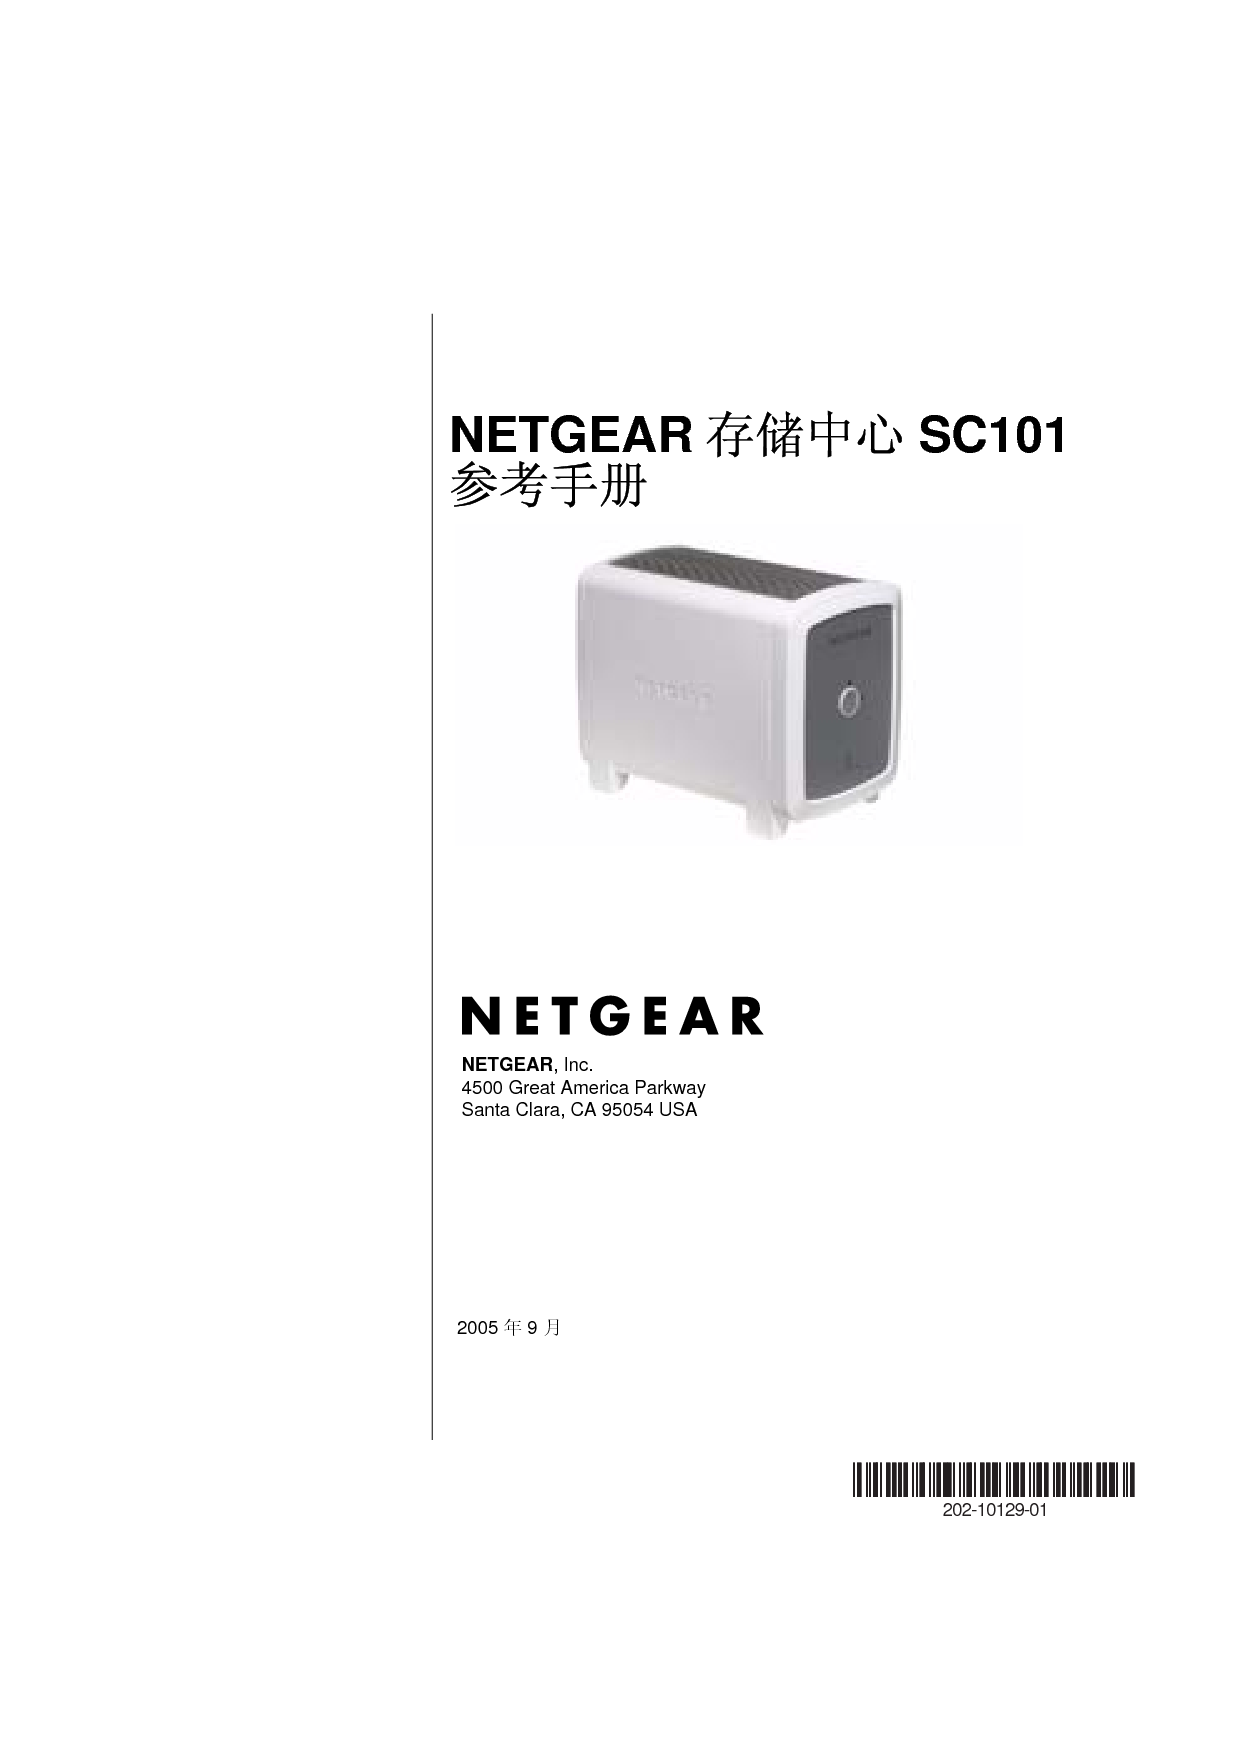 网件 Netgear SC101 用户参考手册 封面